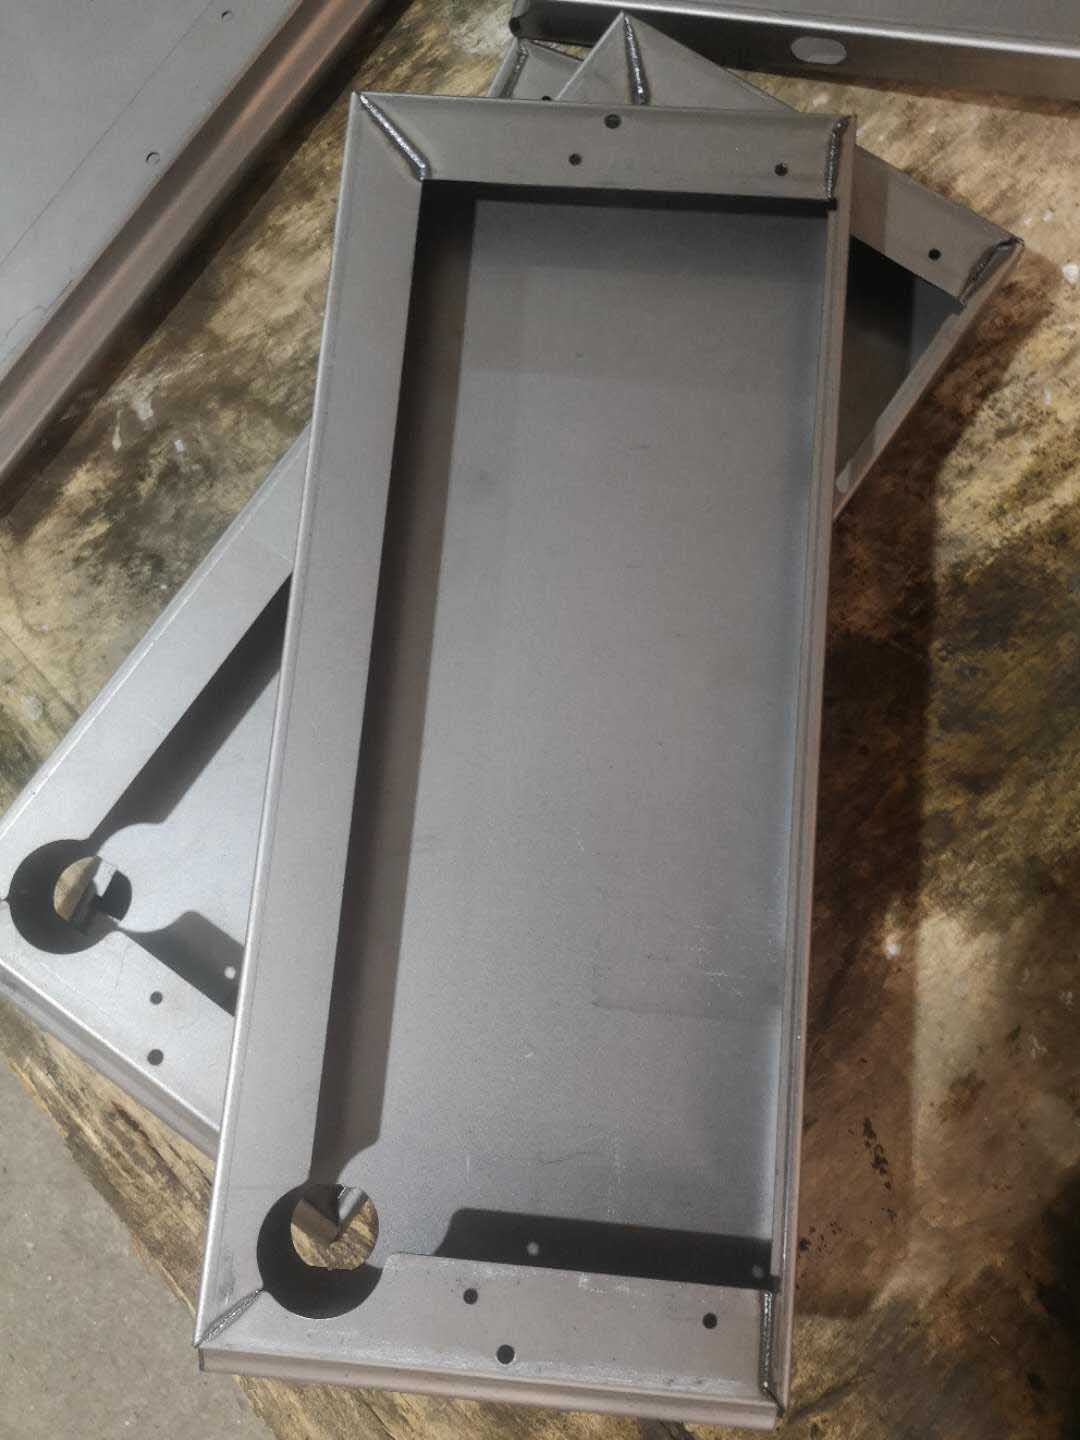 平面柜门激光焊接机—橱柜门焊接